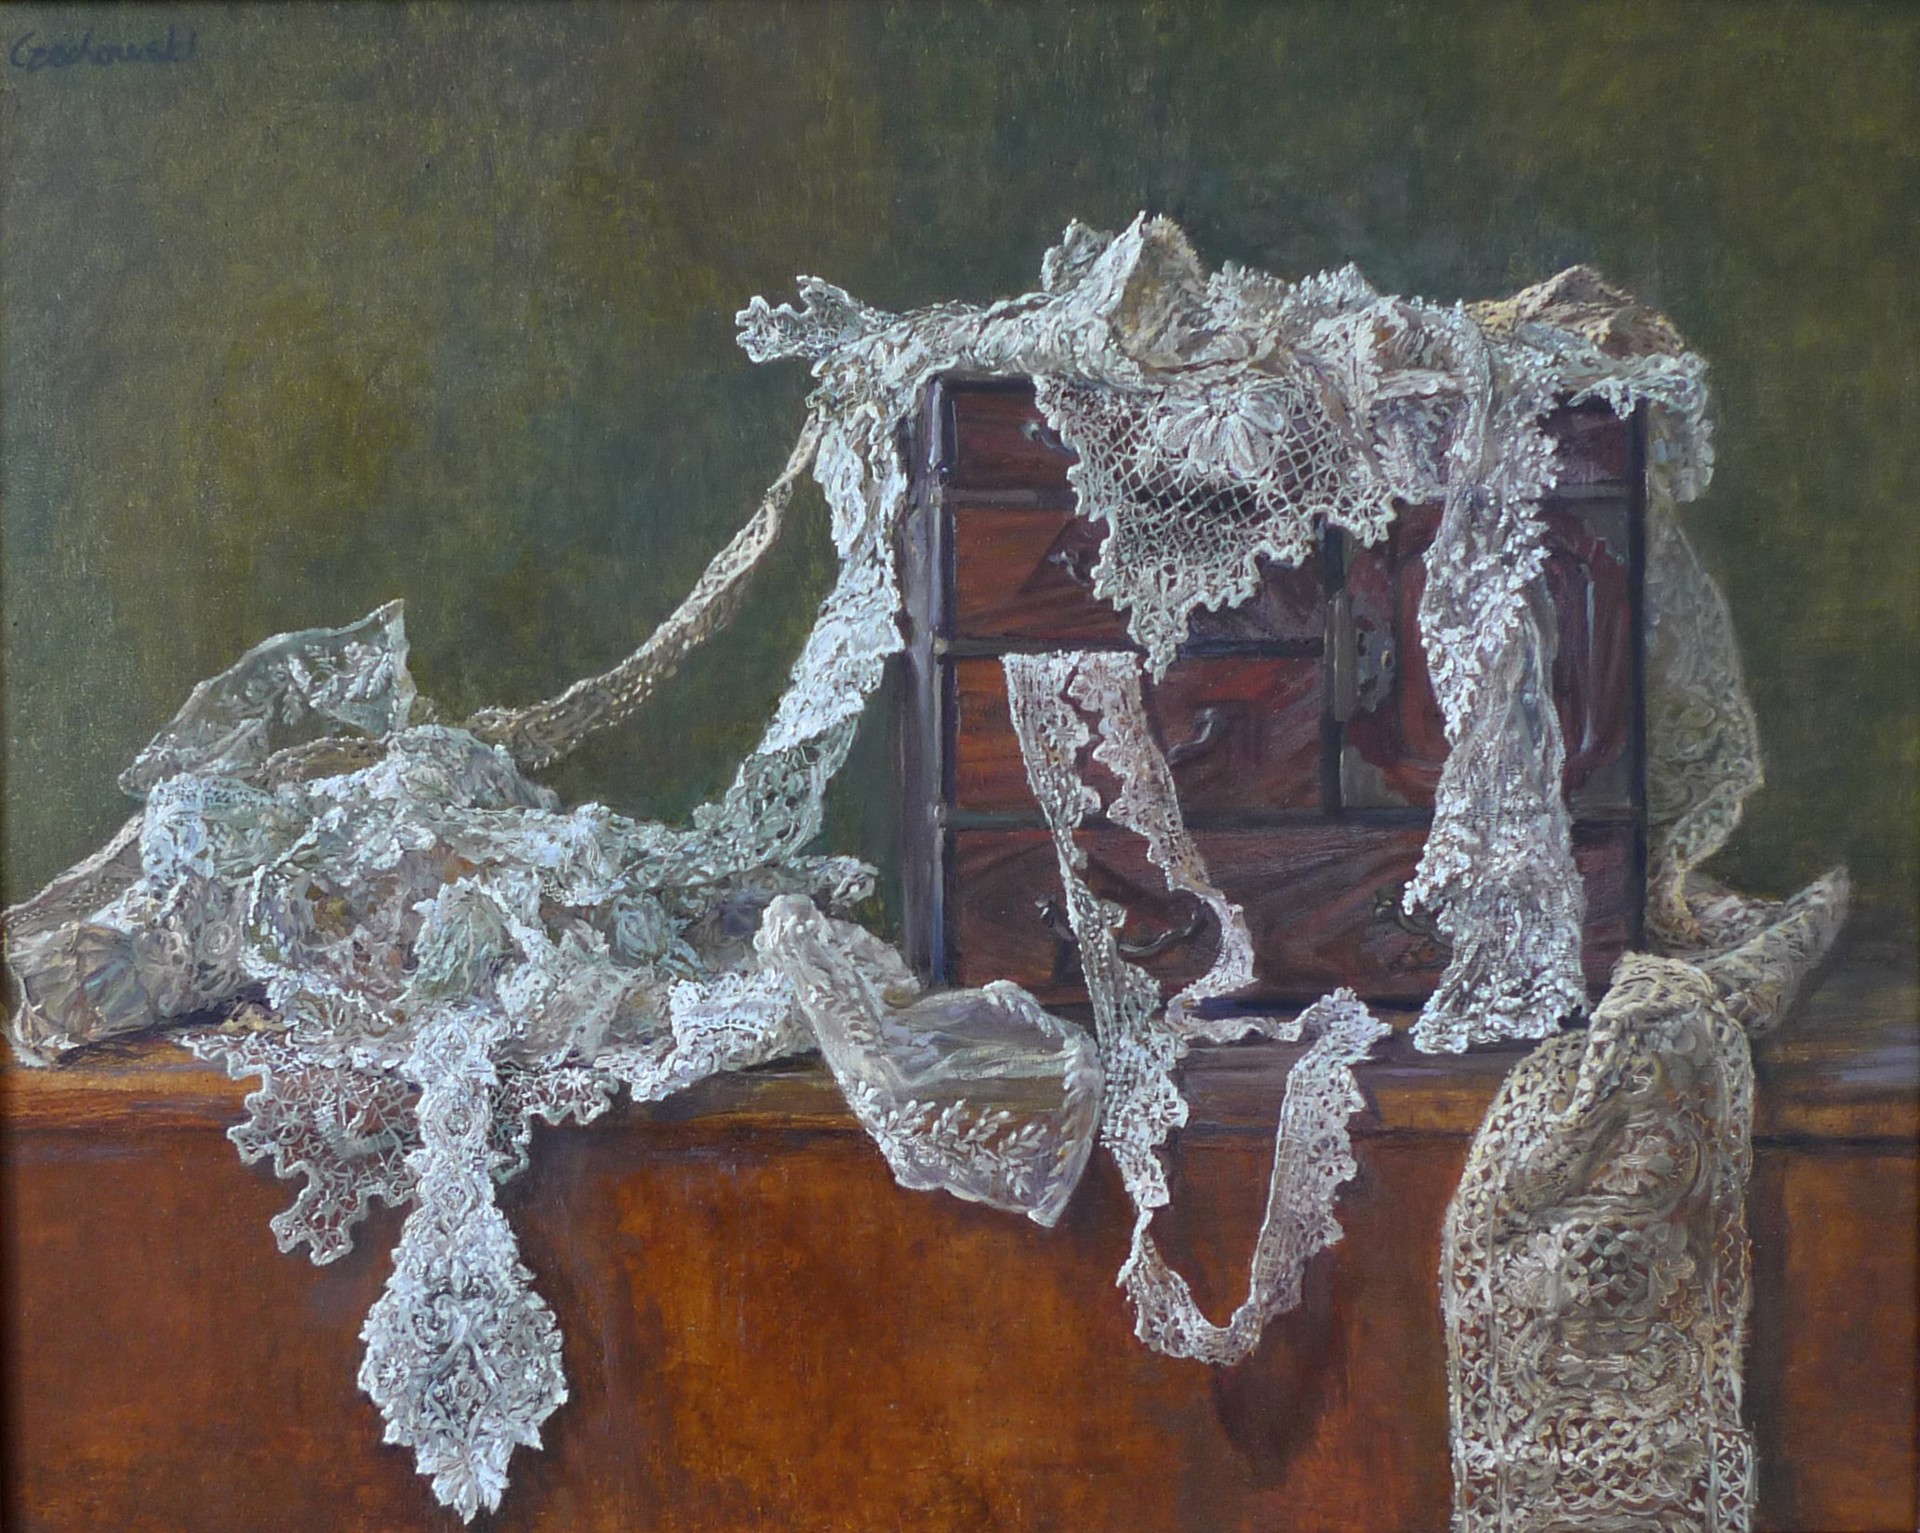 Lace by Alicia Czechowski